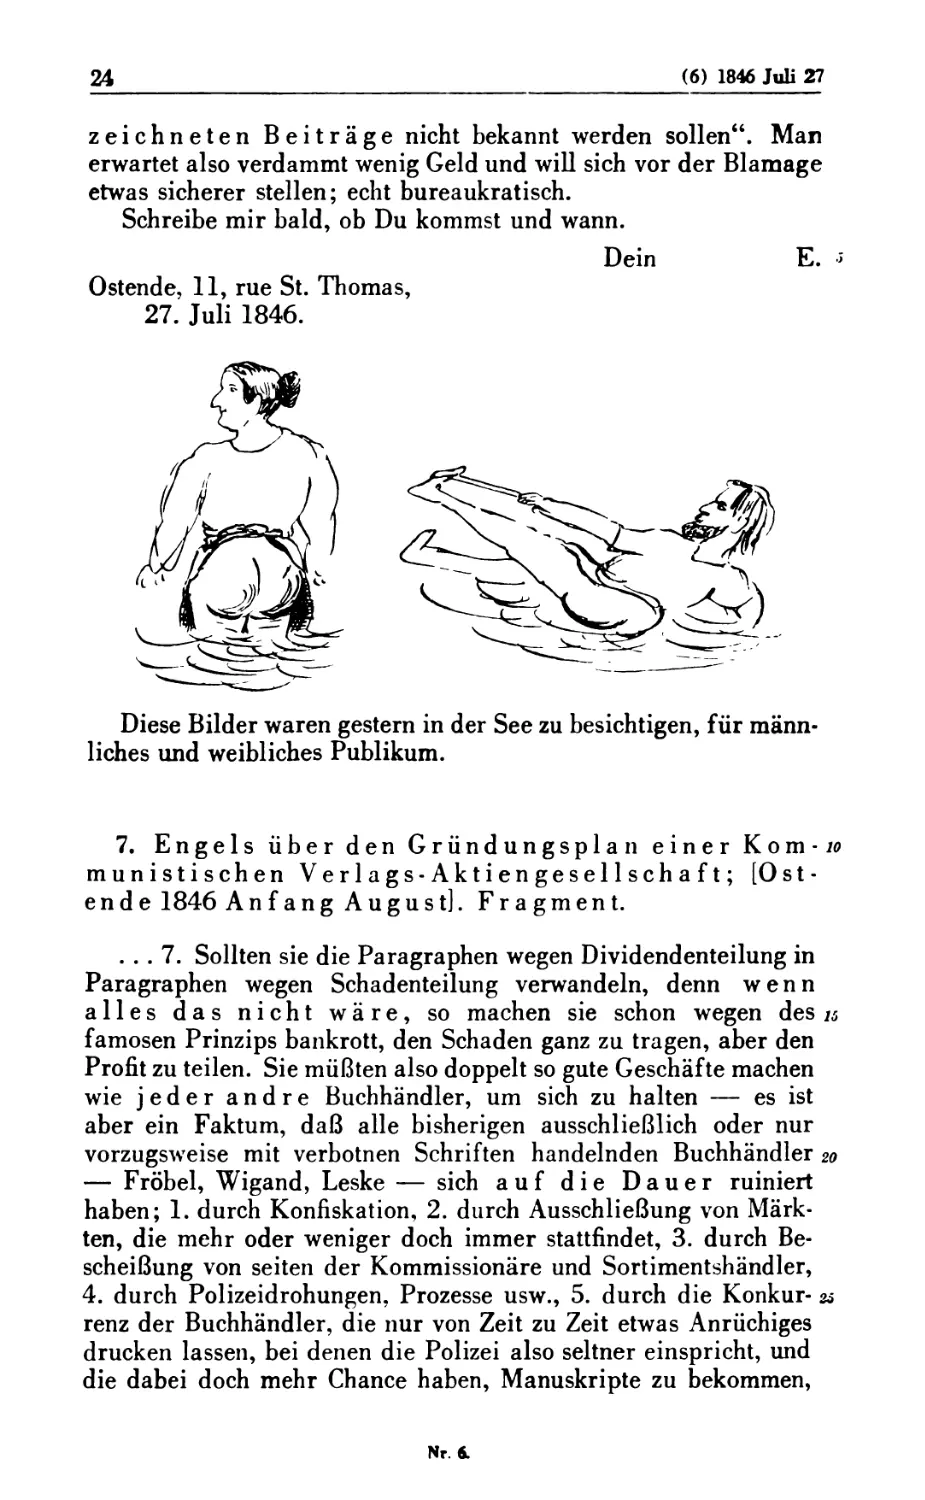 7. Engels über den Gründungsplan einer Kommunistischen Verlags-Aktiengesellschaft ; [Ostende 1846 Anfang August]. Fragment